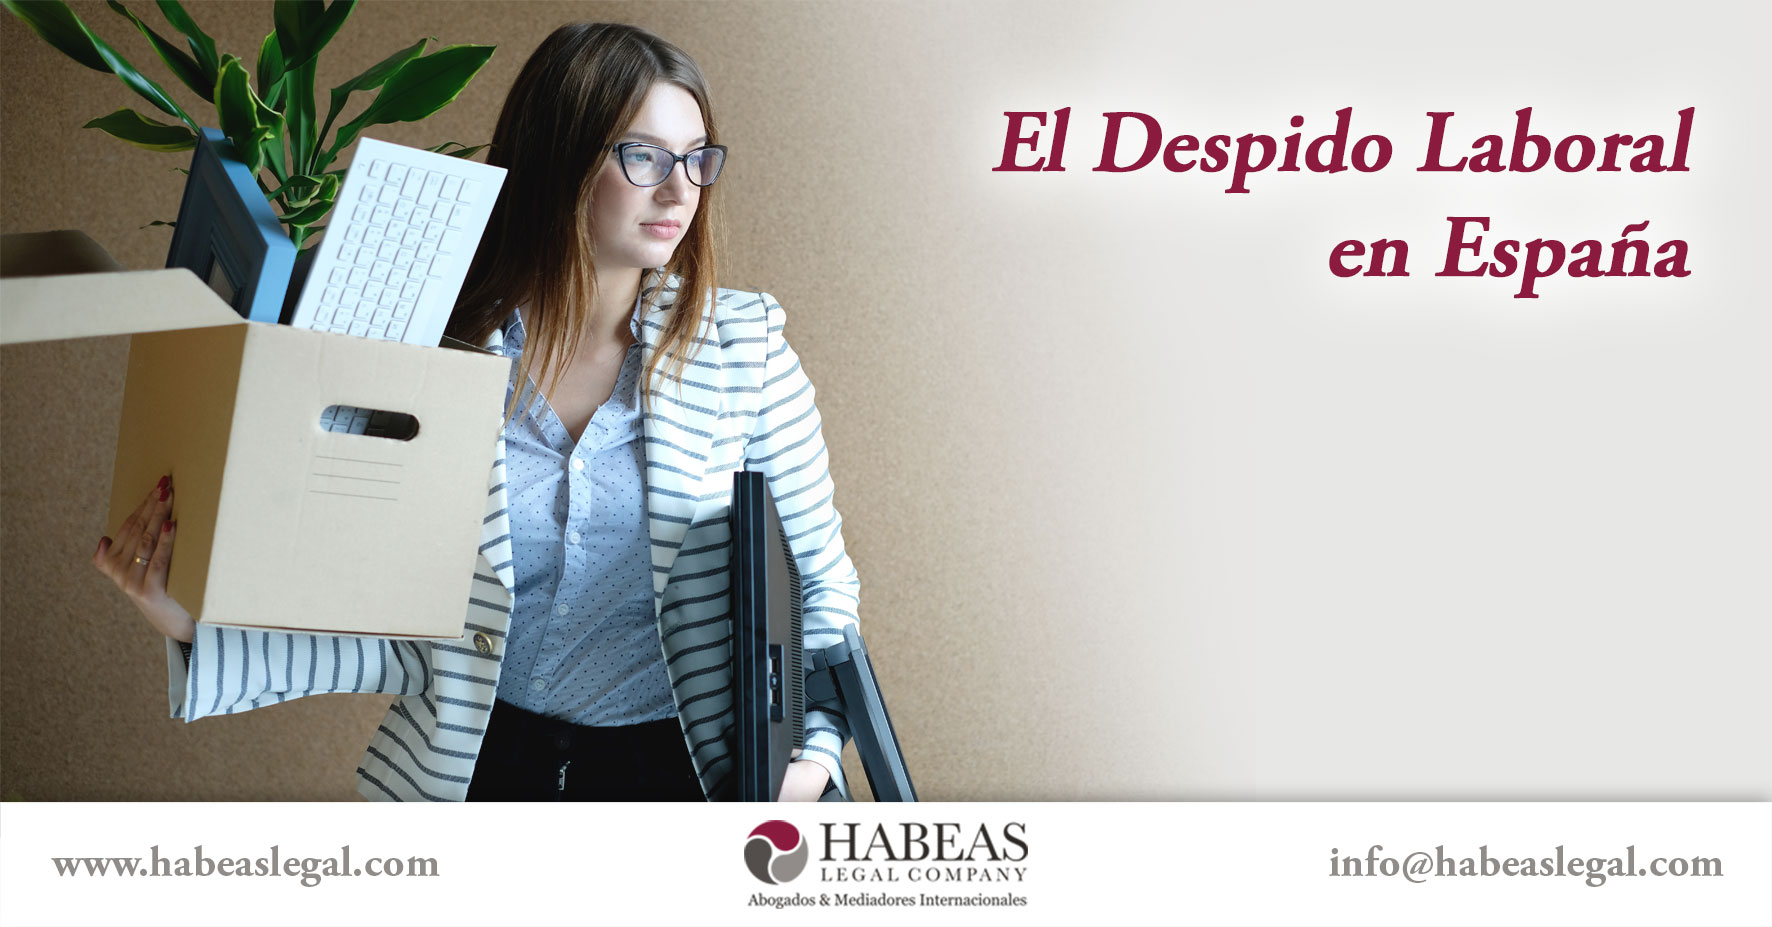 El Despido Laboral en España, te asesora Habeas Legal